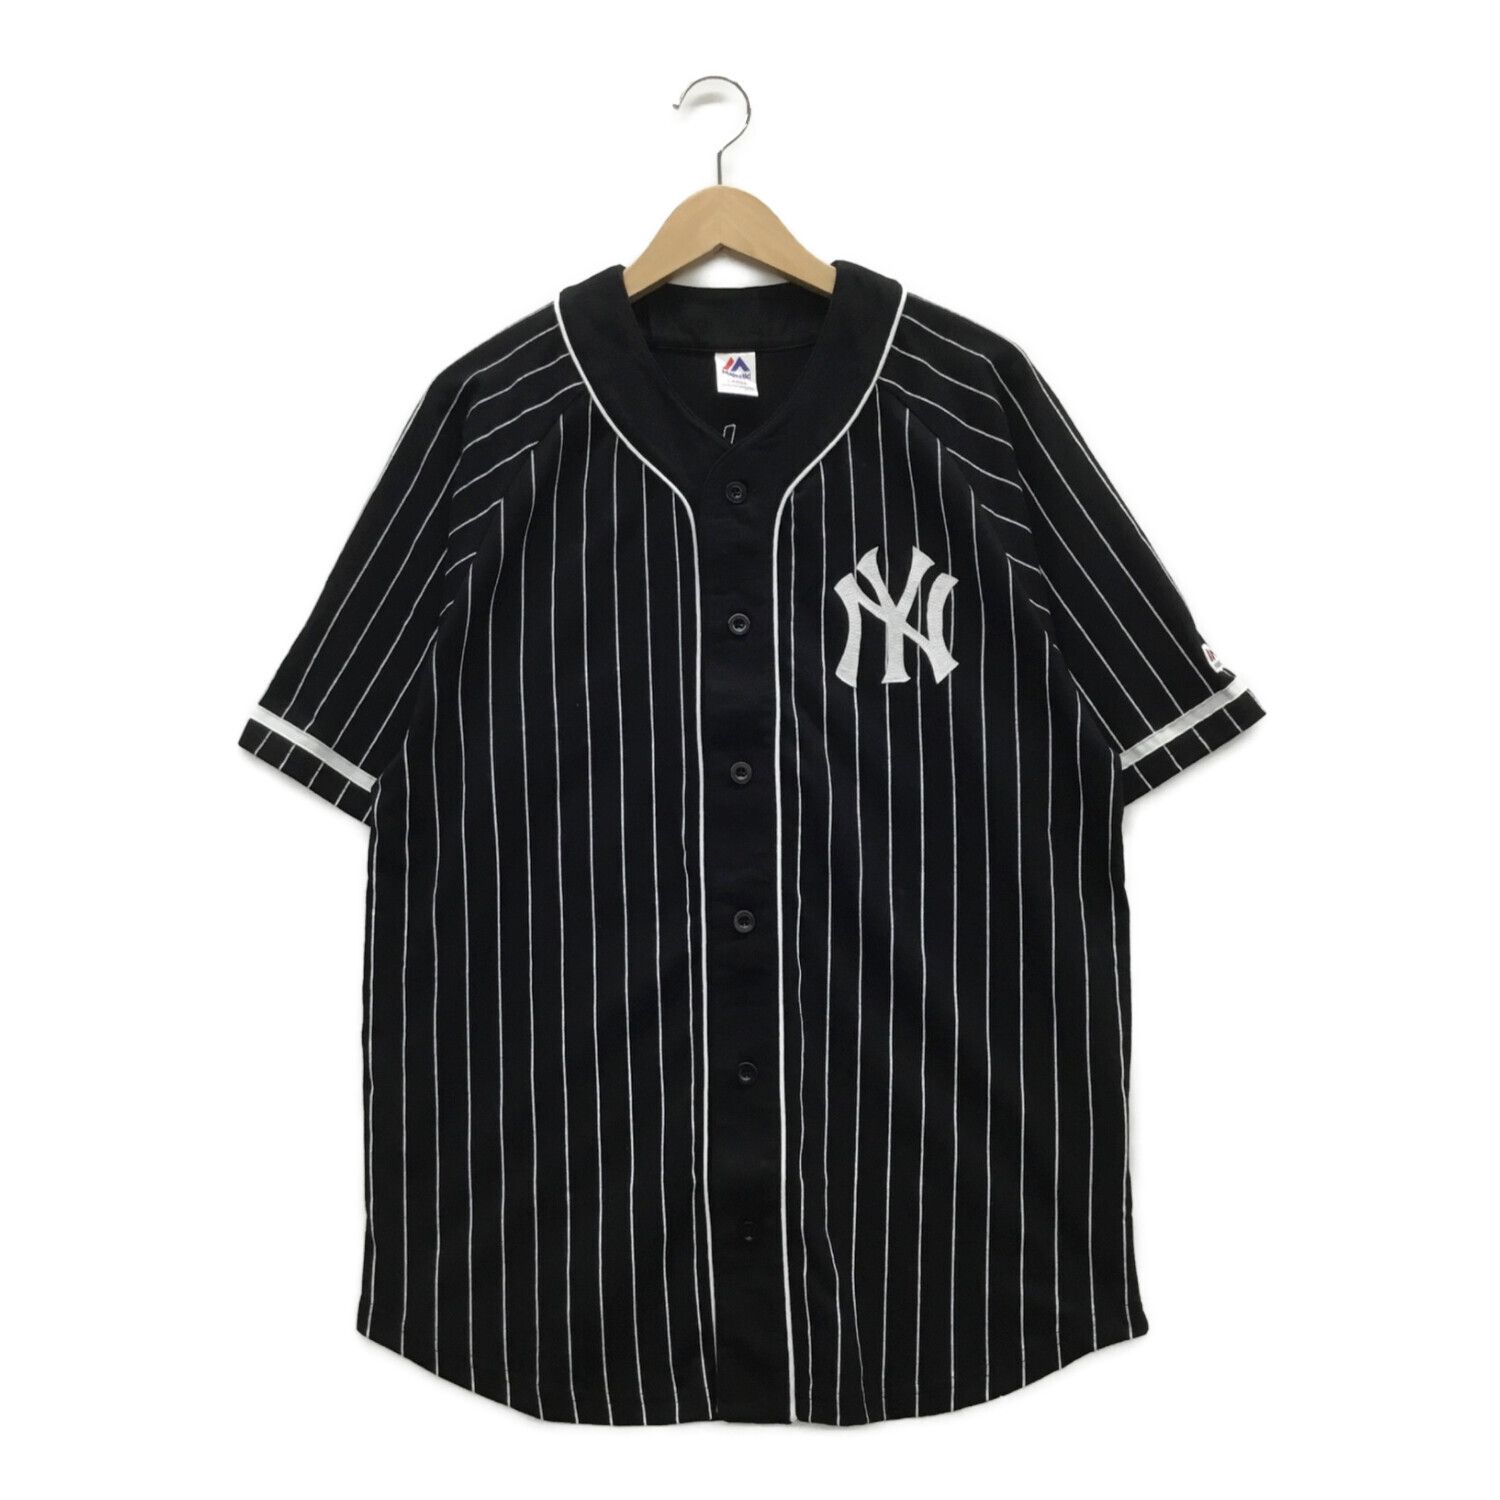 Majestic (マジェスティック) ベースボールシャツ メンズ SIZE L ブラック ニューヨークヤンキース 秋冬物  MM21-NYK-0021-BLK6-L